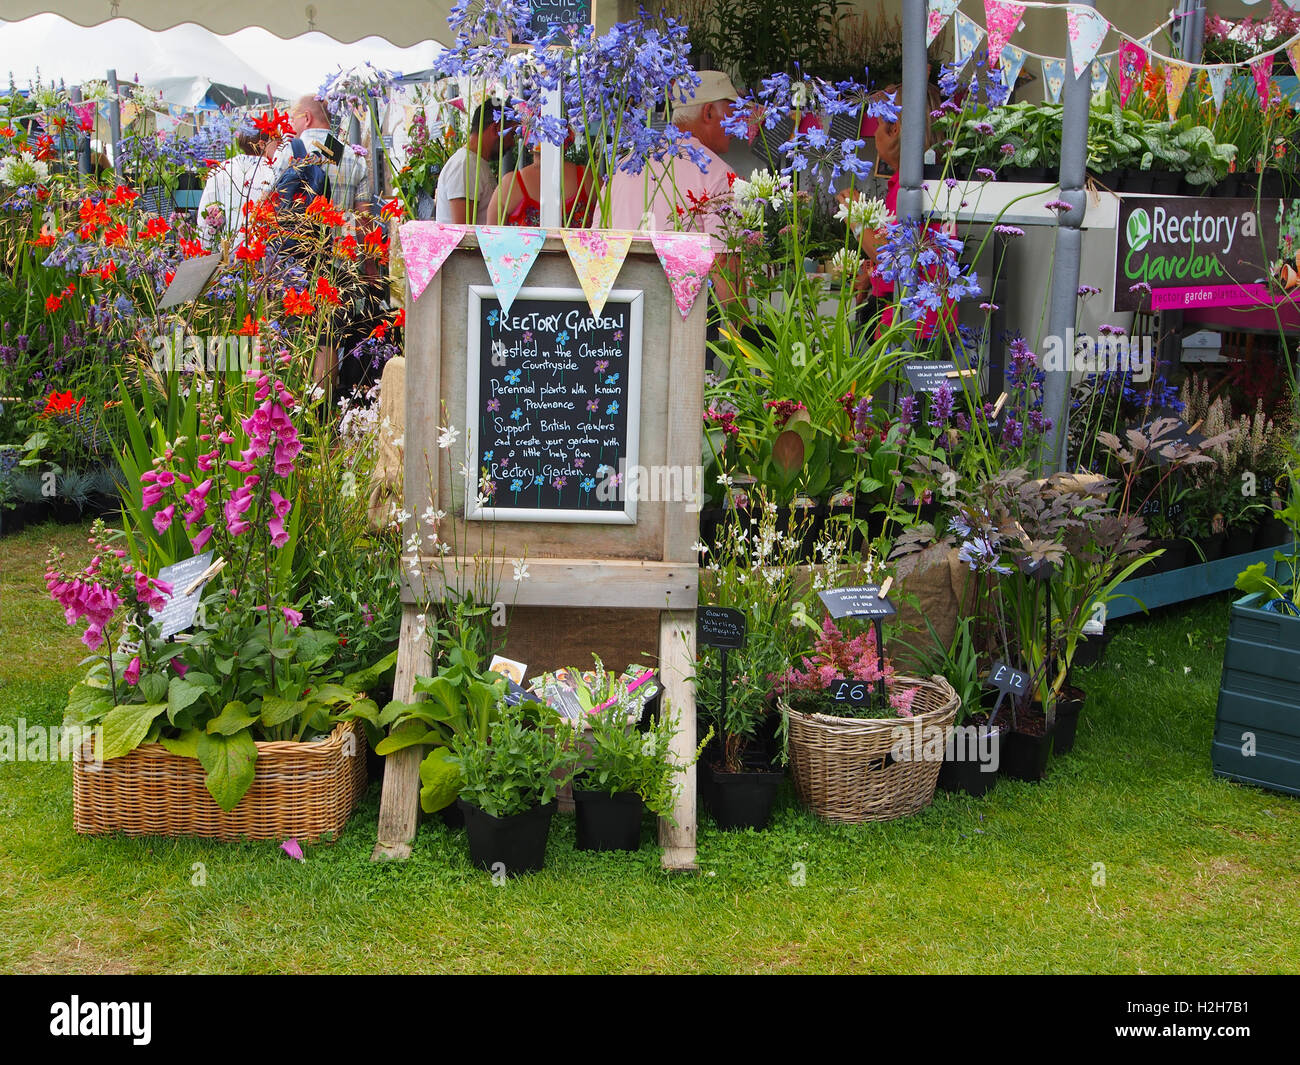 Ausstellen von Pfarrhaus Gartenpflanzen - Baumschule in Cheshire - an Tatton Park Flower Show, Cheshire, inszenierte 2016. Stockfoto